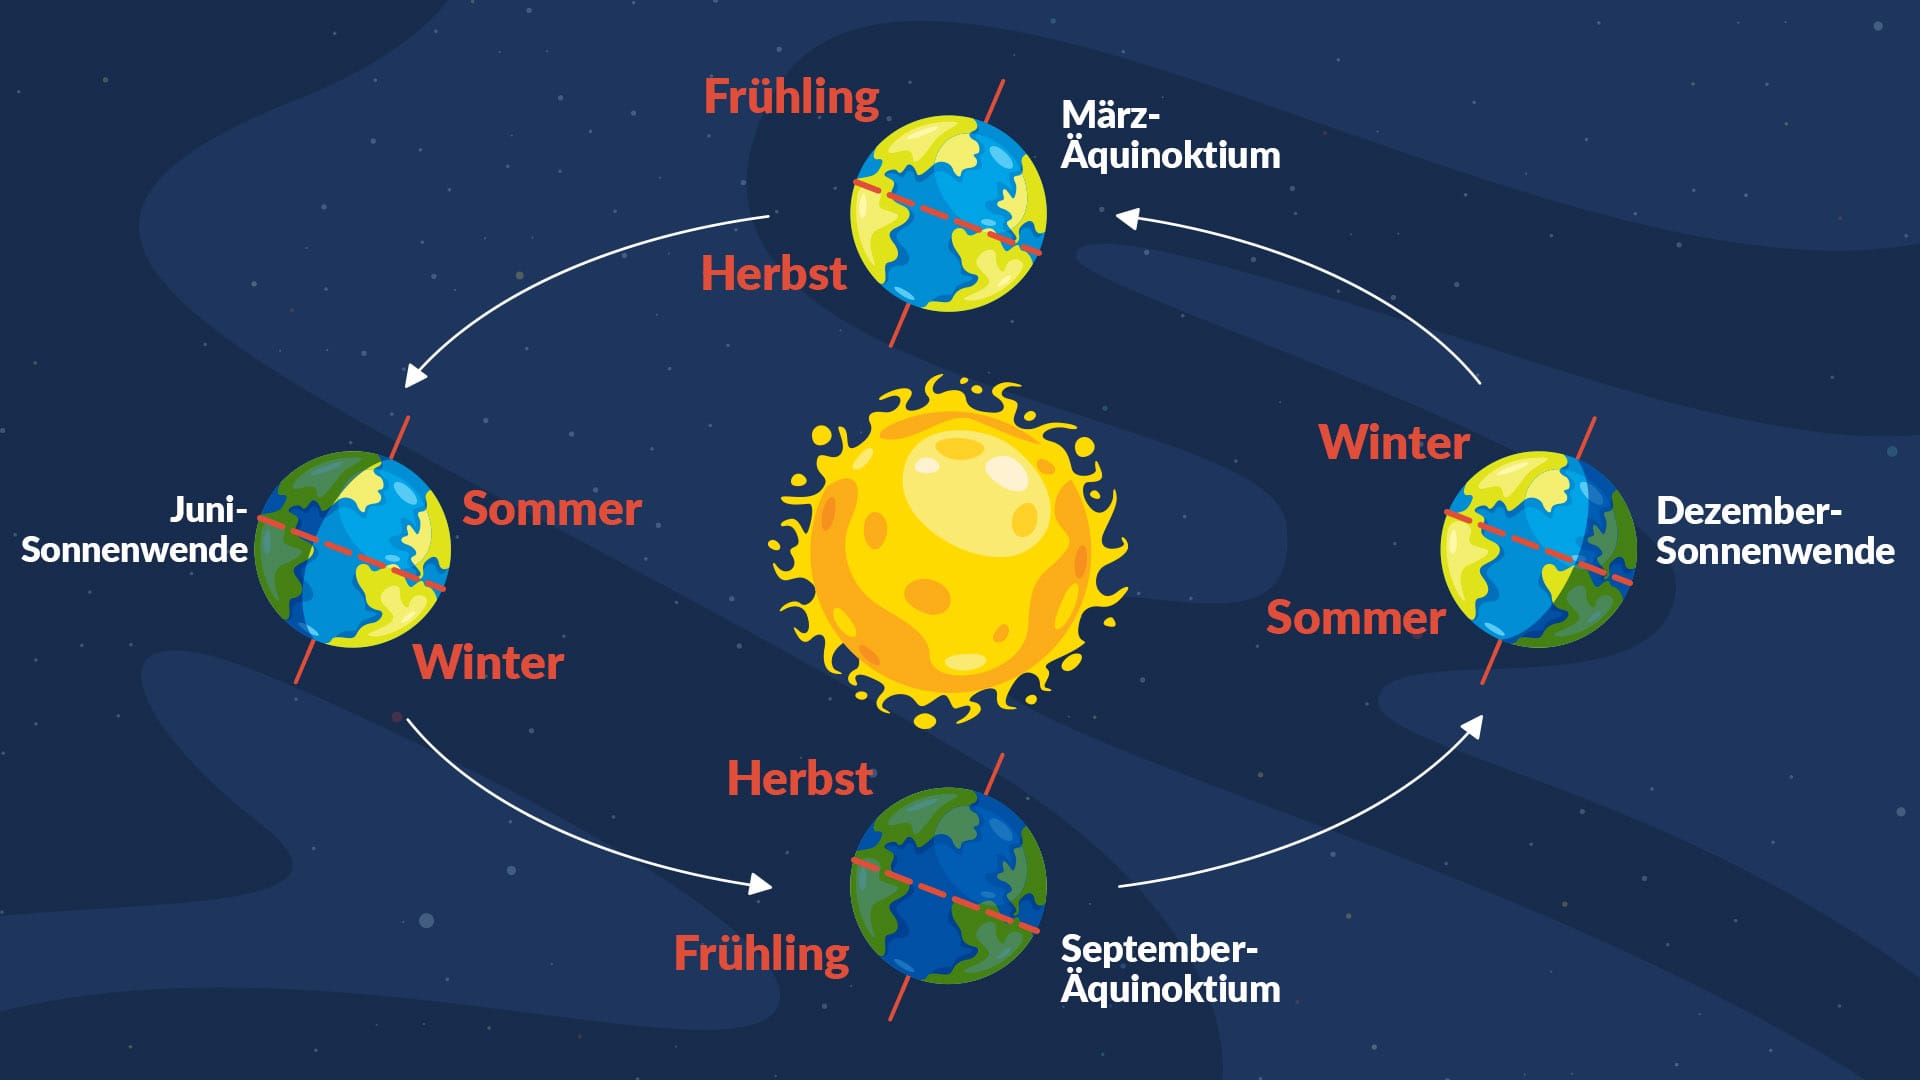 Equinoxes & solstices quiz intro#2